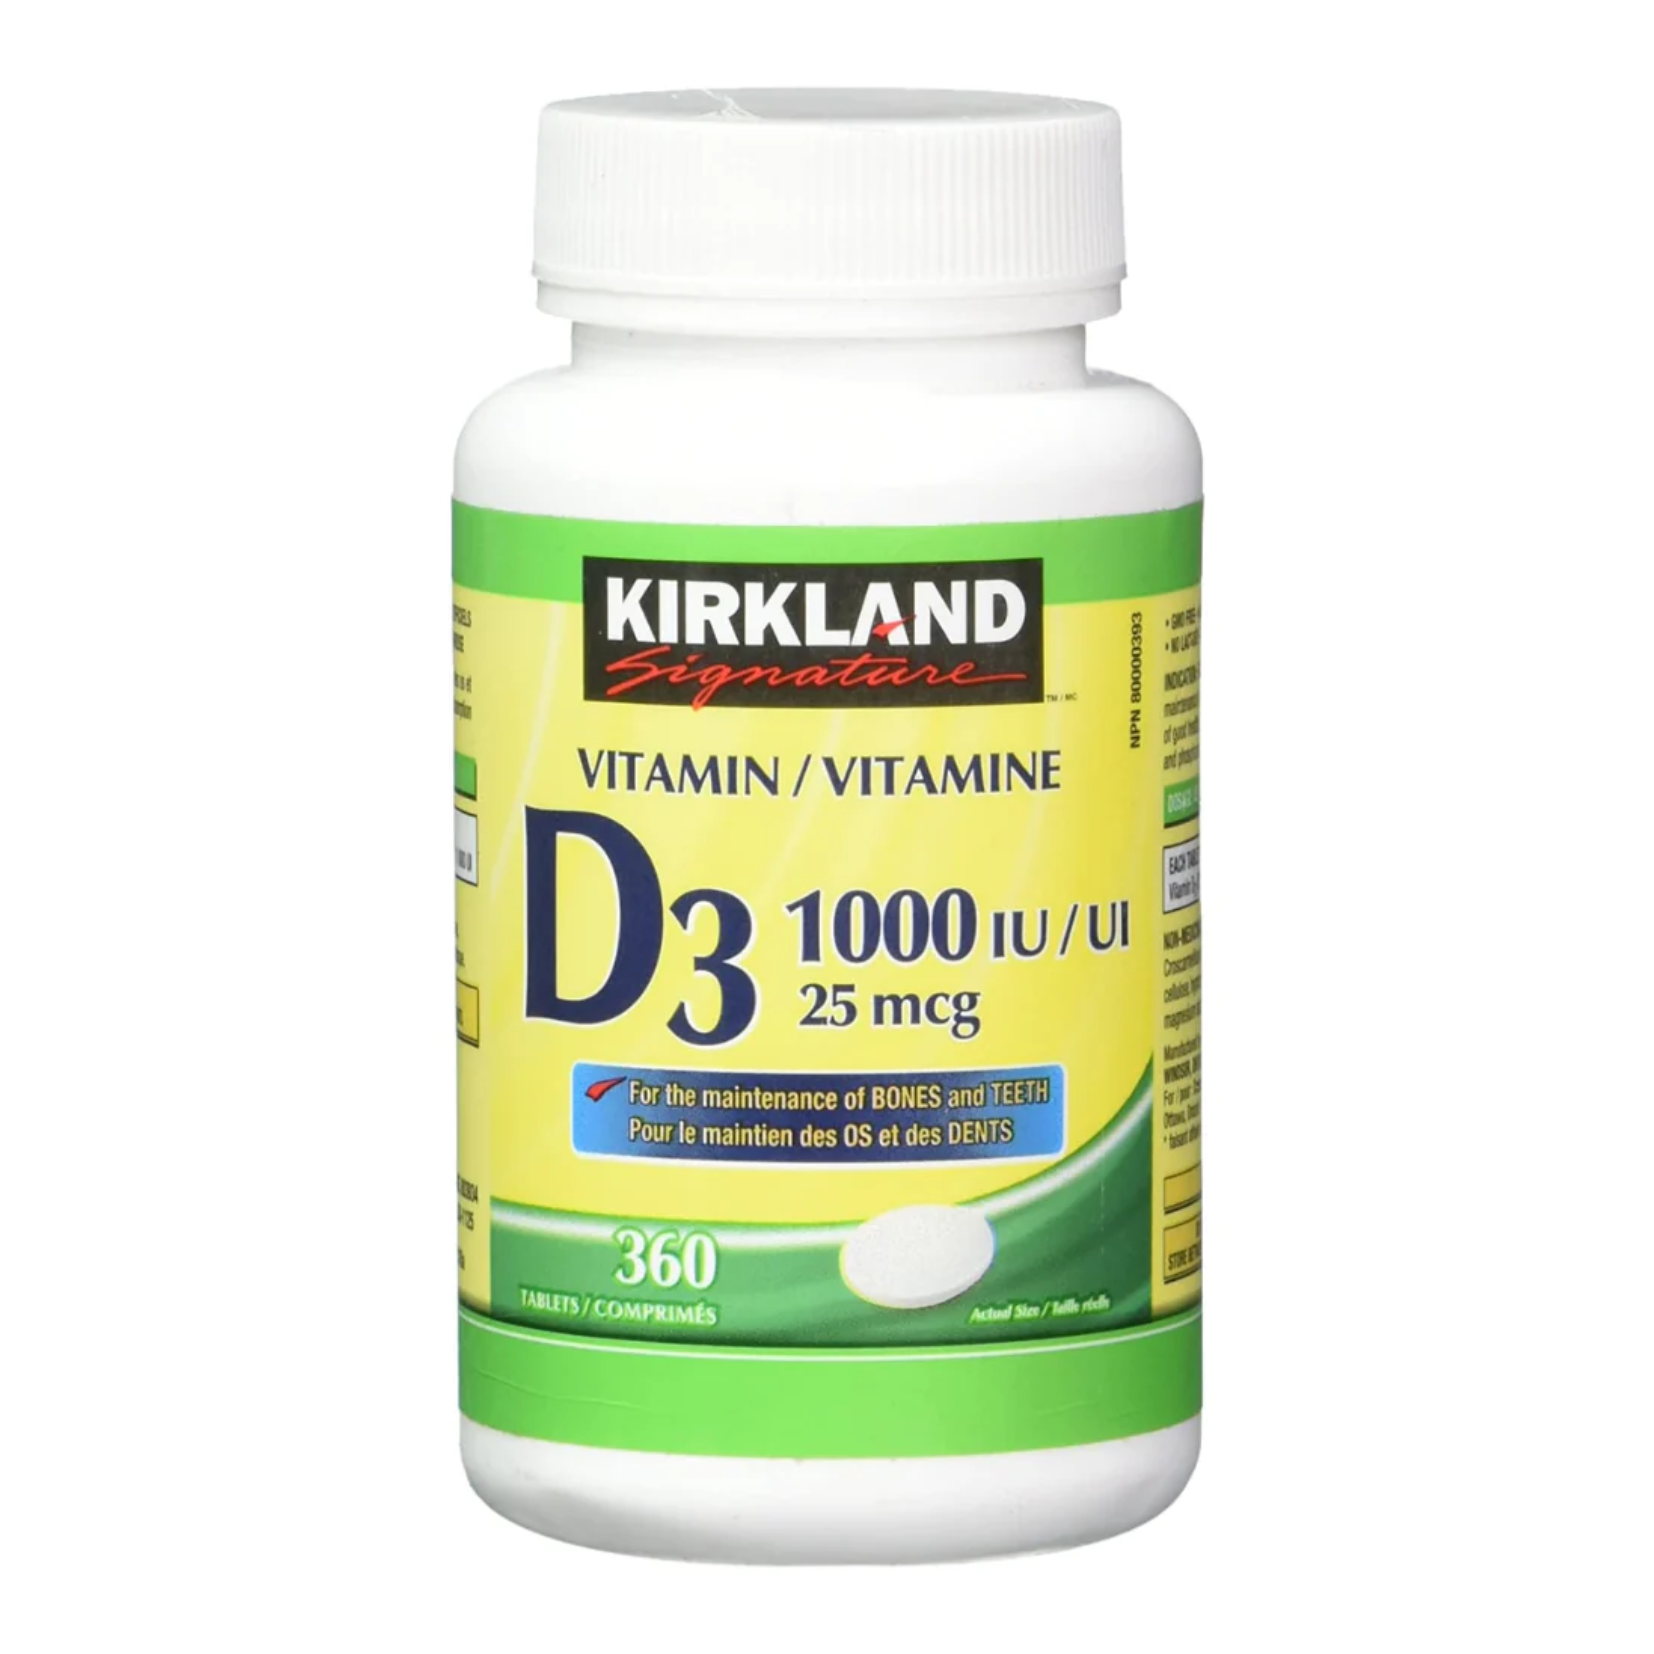 Kirkland Vitamin D3 1000IU x 360